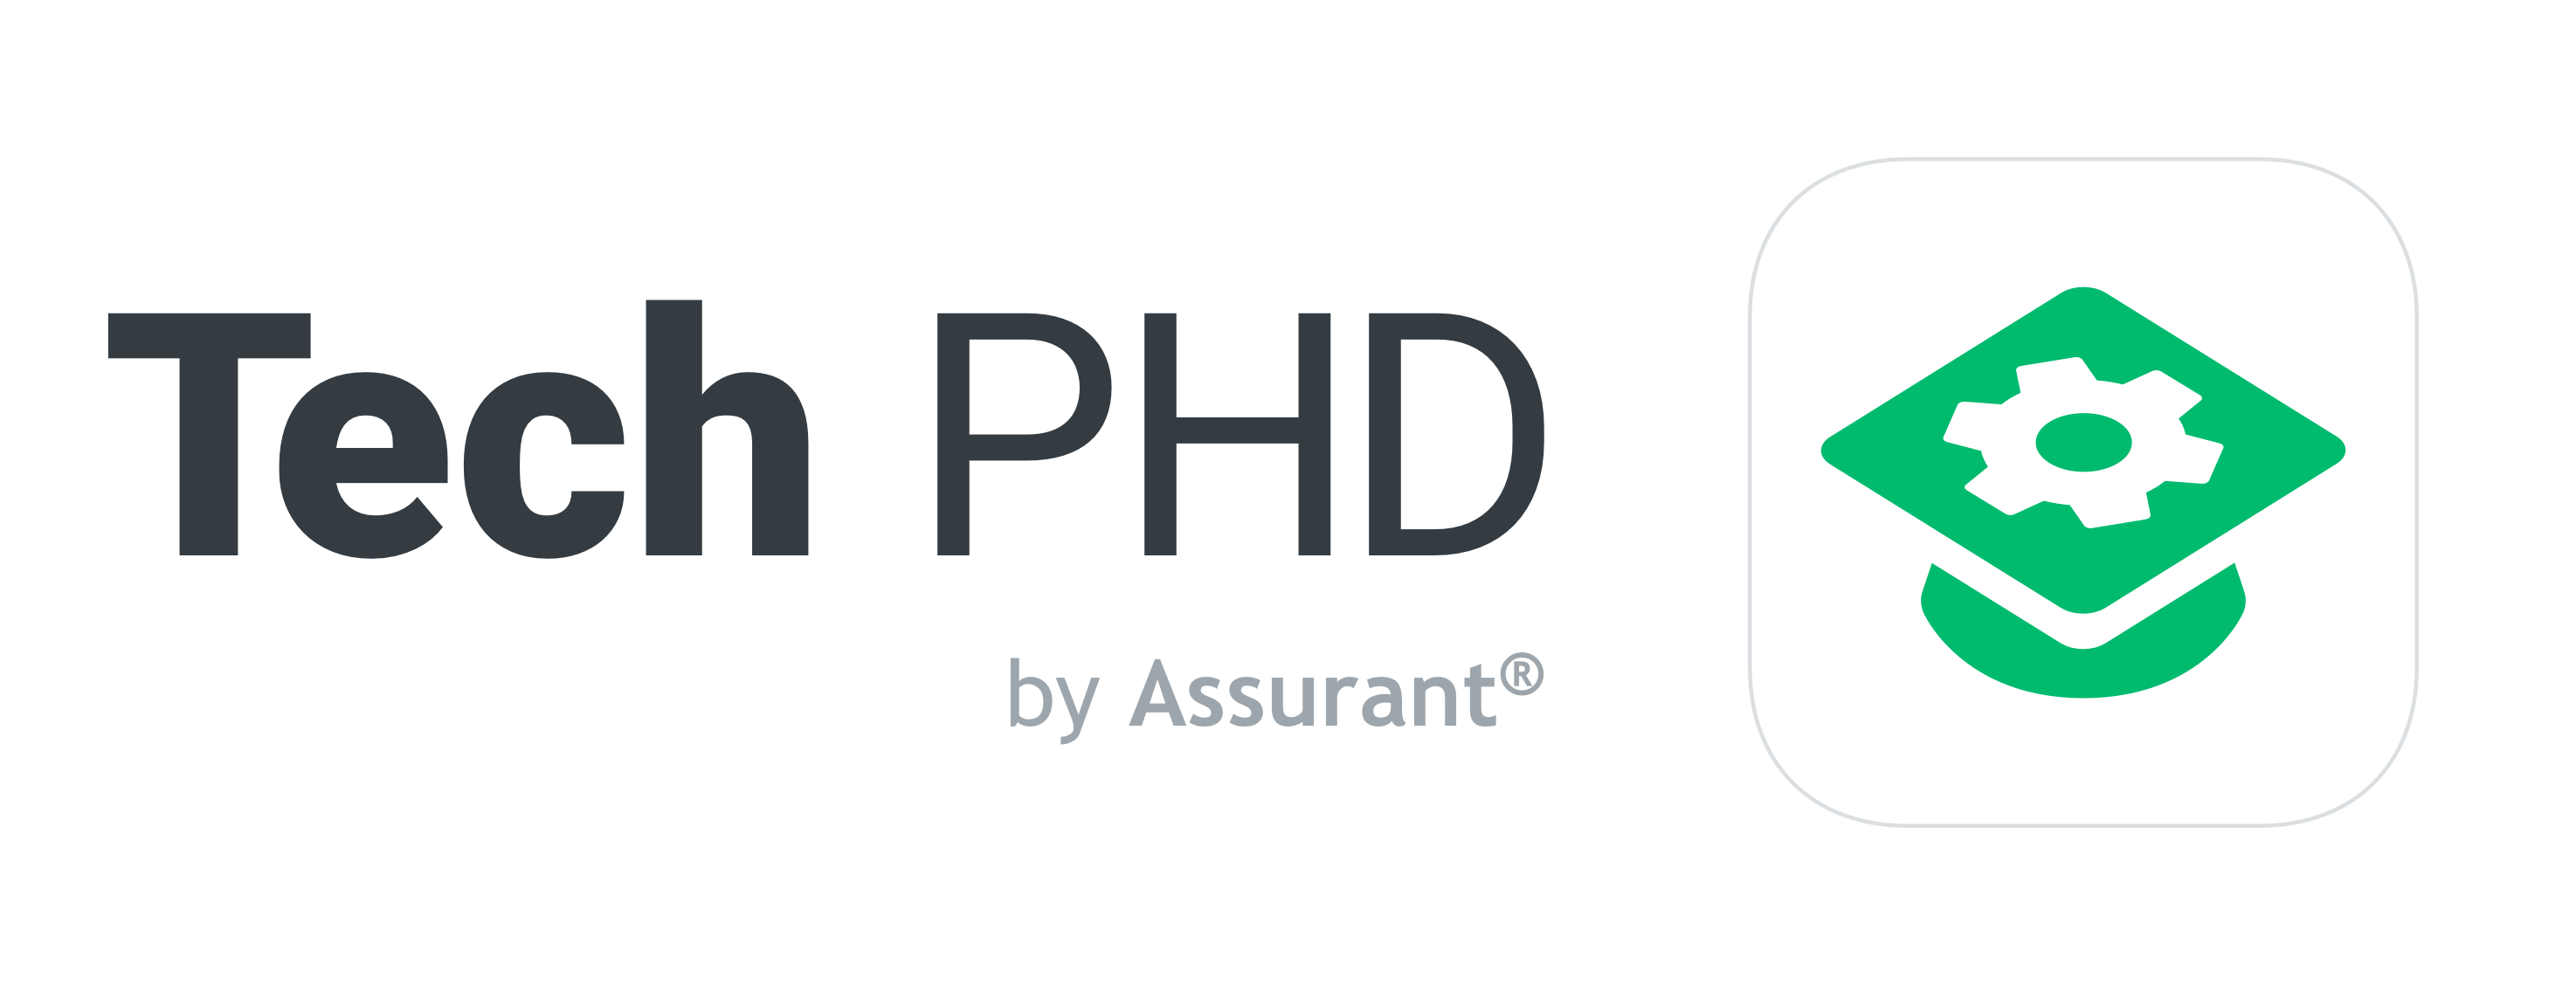 Assurant Logo - Tech PHD